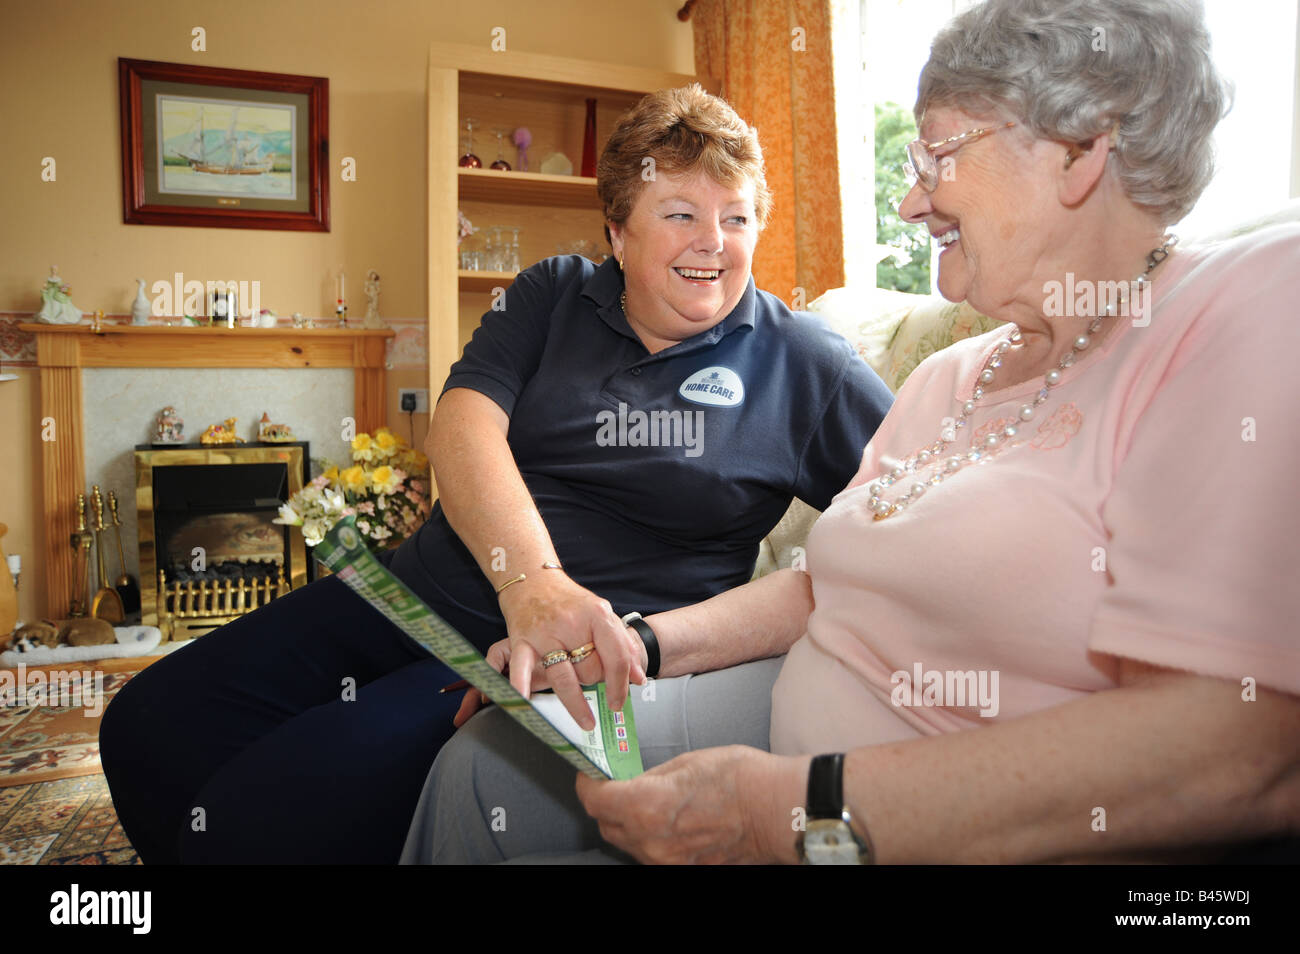 Le personnel de soins à domicile du Conseil de permettre à des personnes âgées et handicapées de vivre dans leur propre maison par le soutien et l'aide avec le ménage Banque D'Images